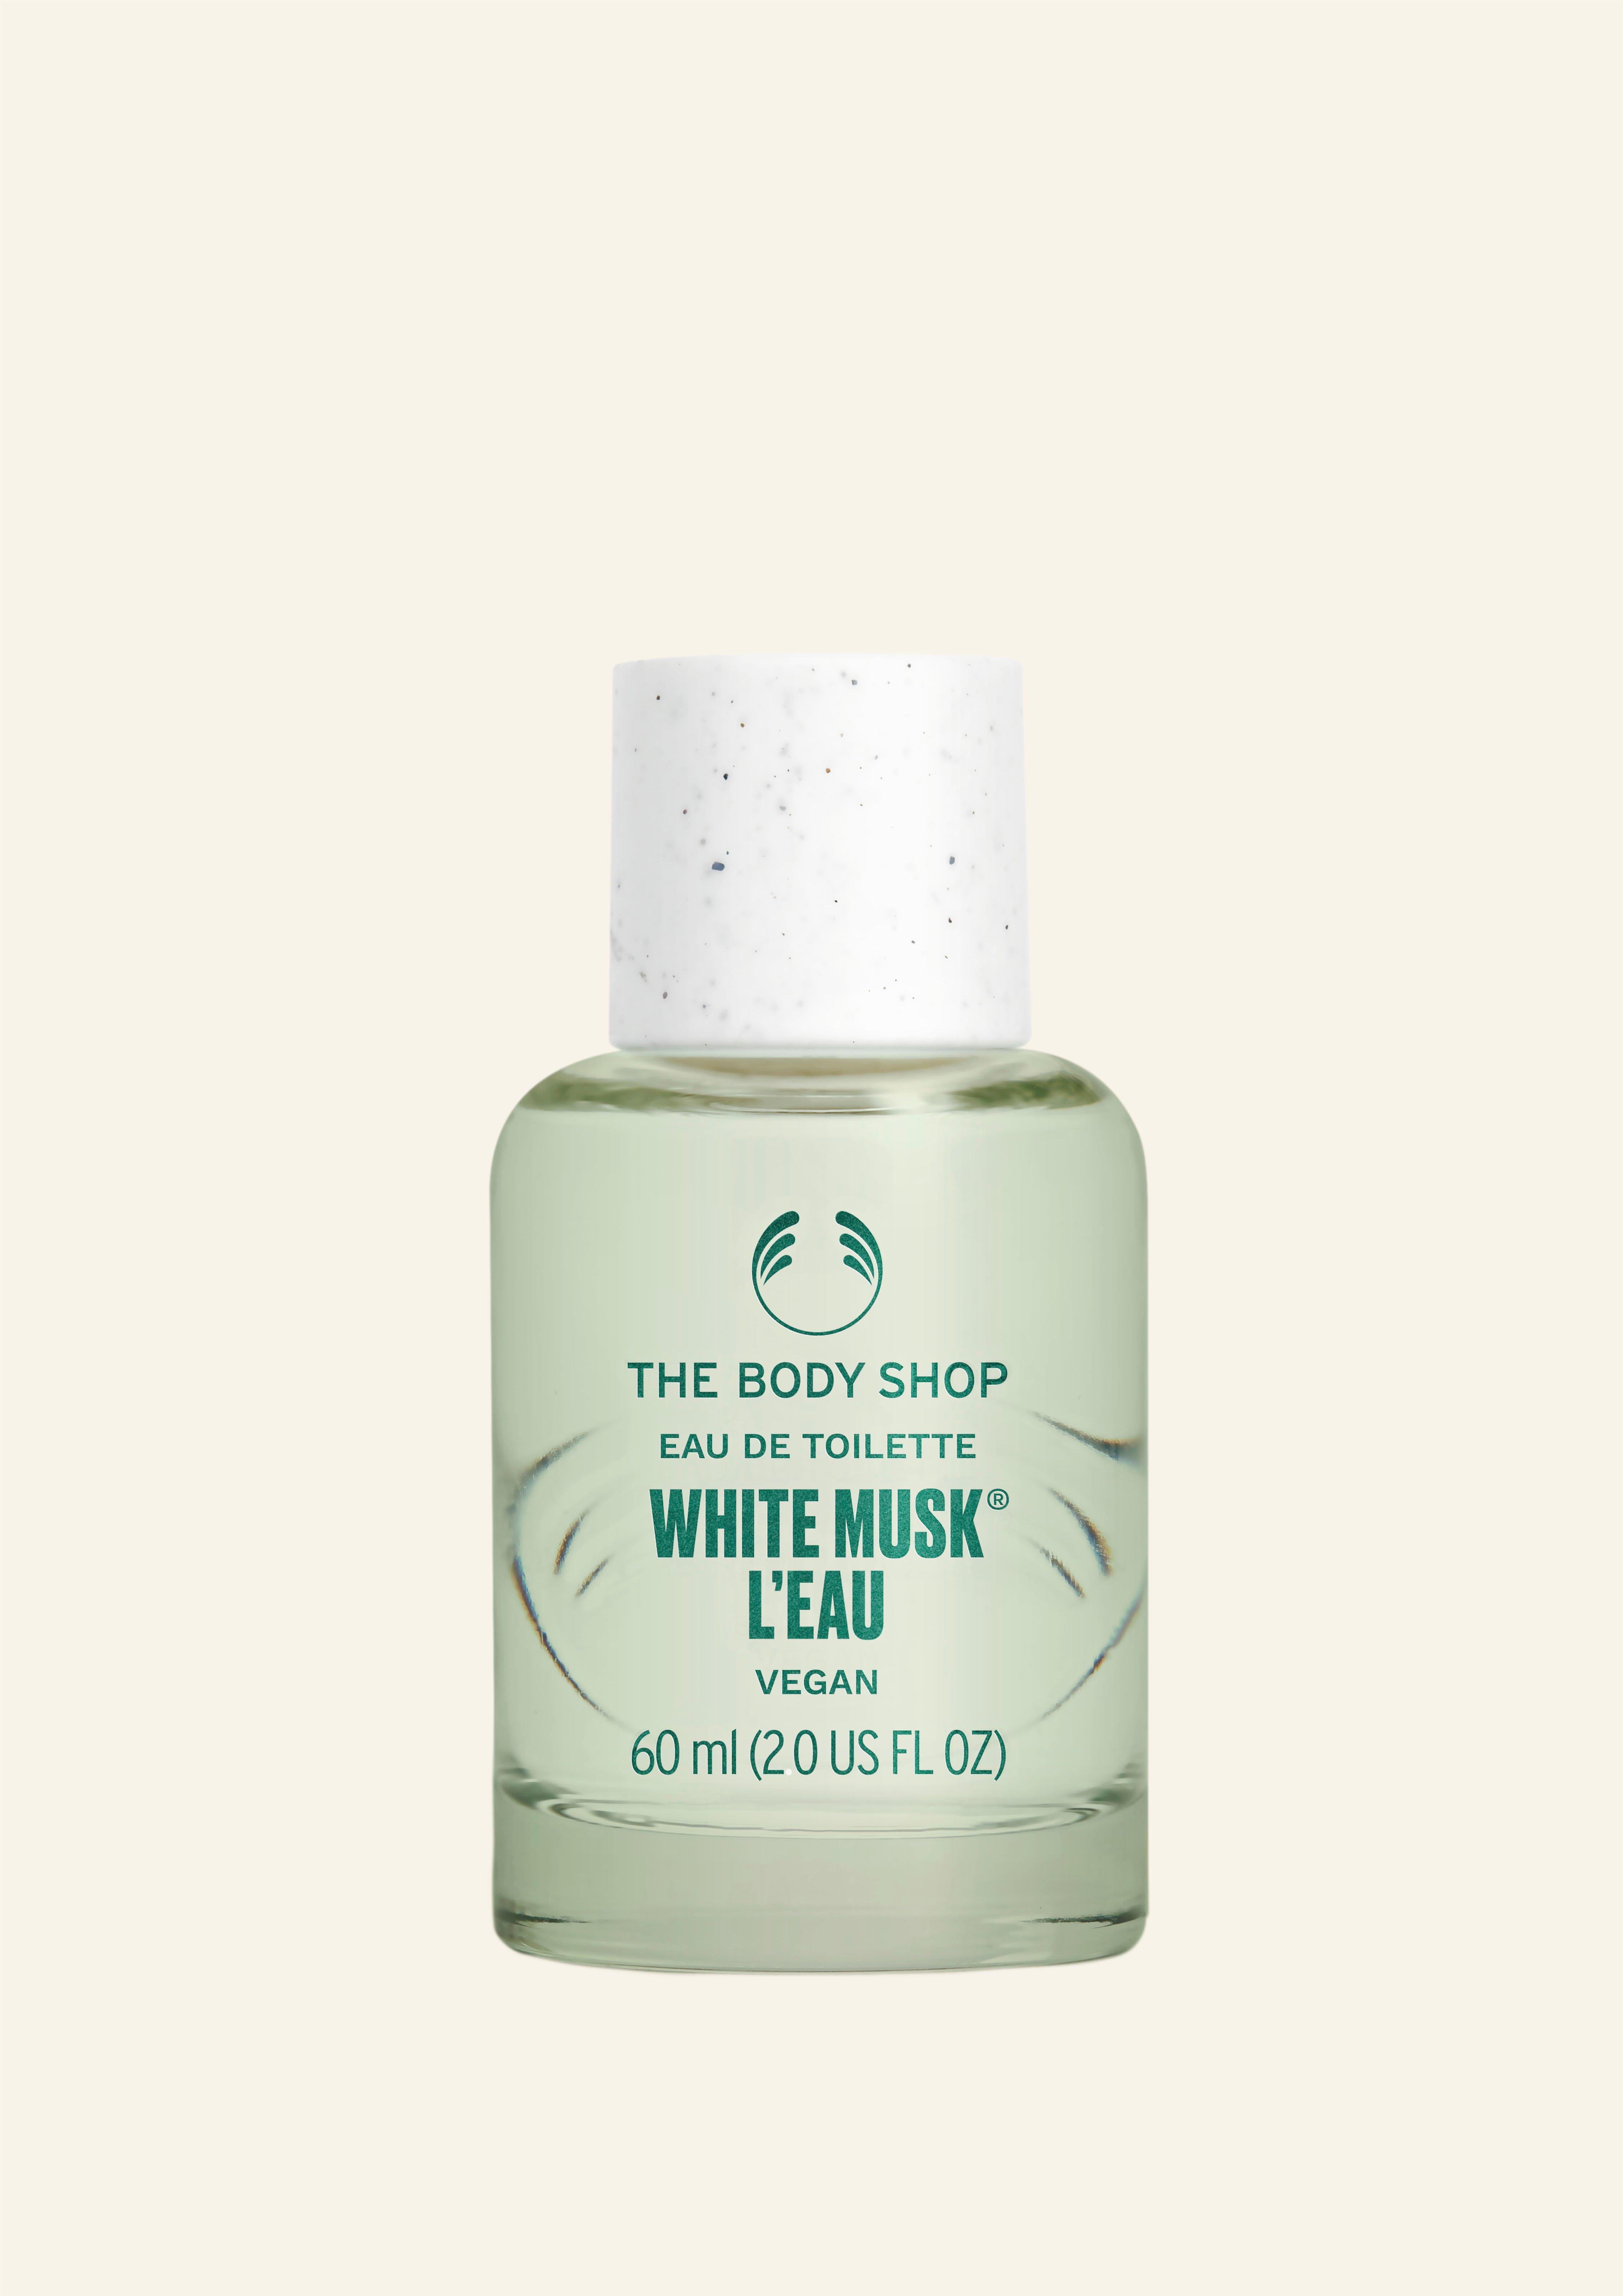 The Body Shop White Musk® L’eau Eau De Toilette 60 ml